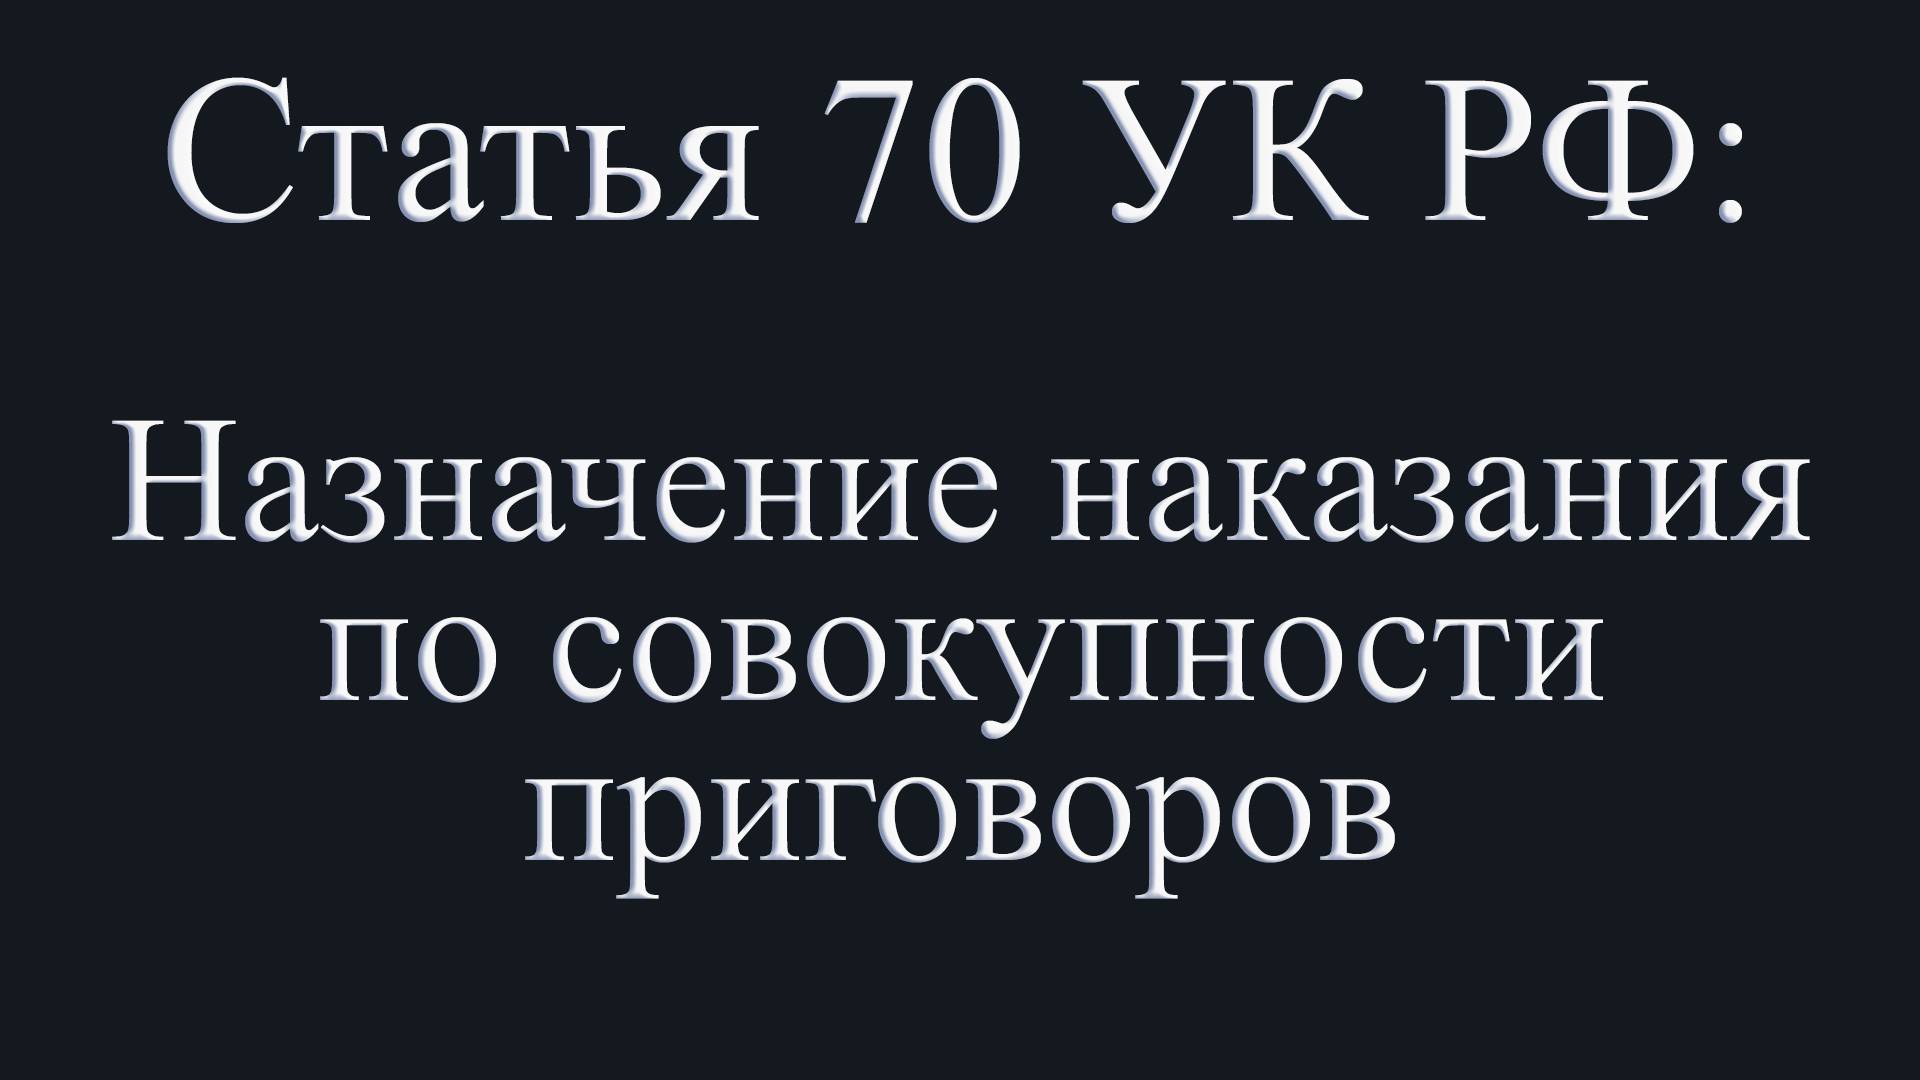 Статья 70 УК РФ: Назначение наказания по совокупности приговоров.